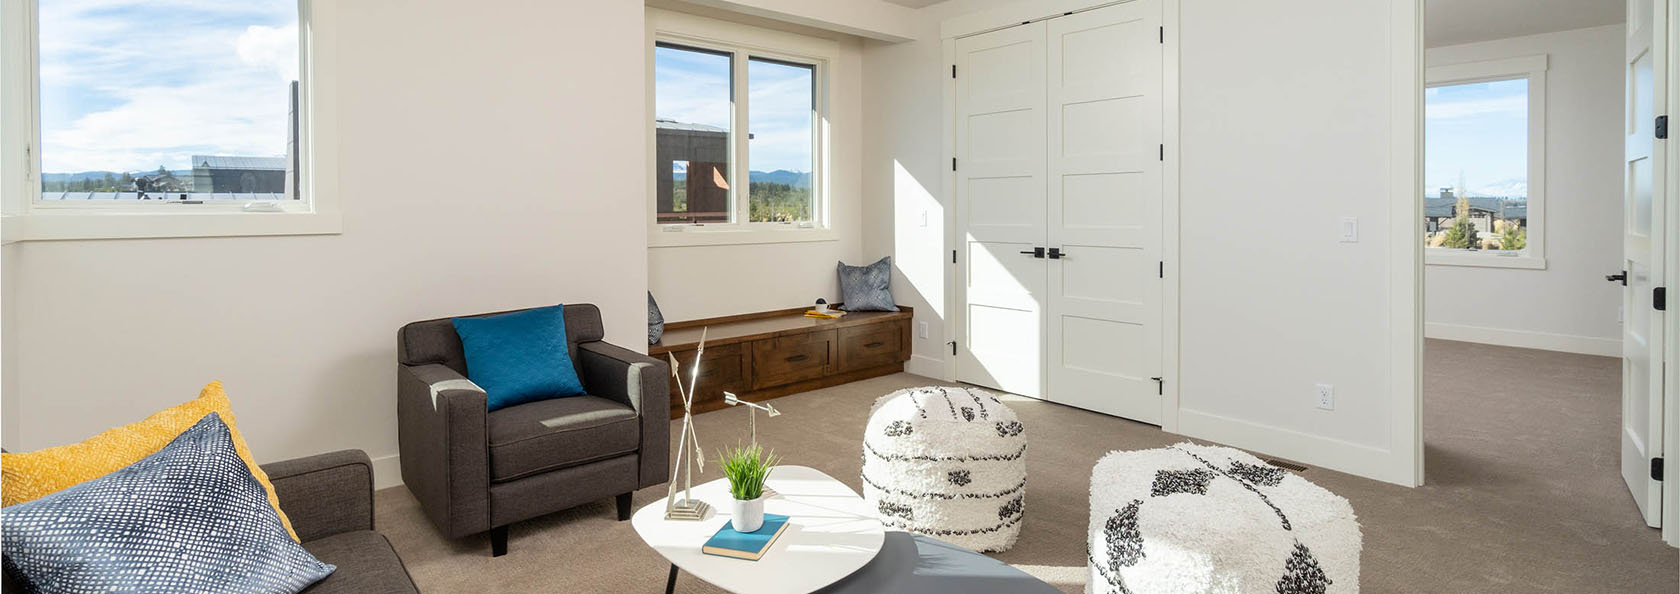 Tetherow Elite Bonus Room | Home Builders in Oregon ...